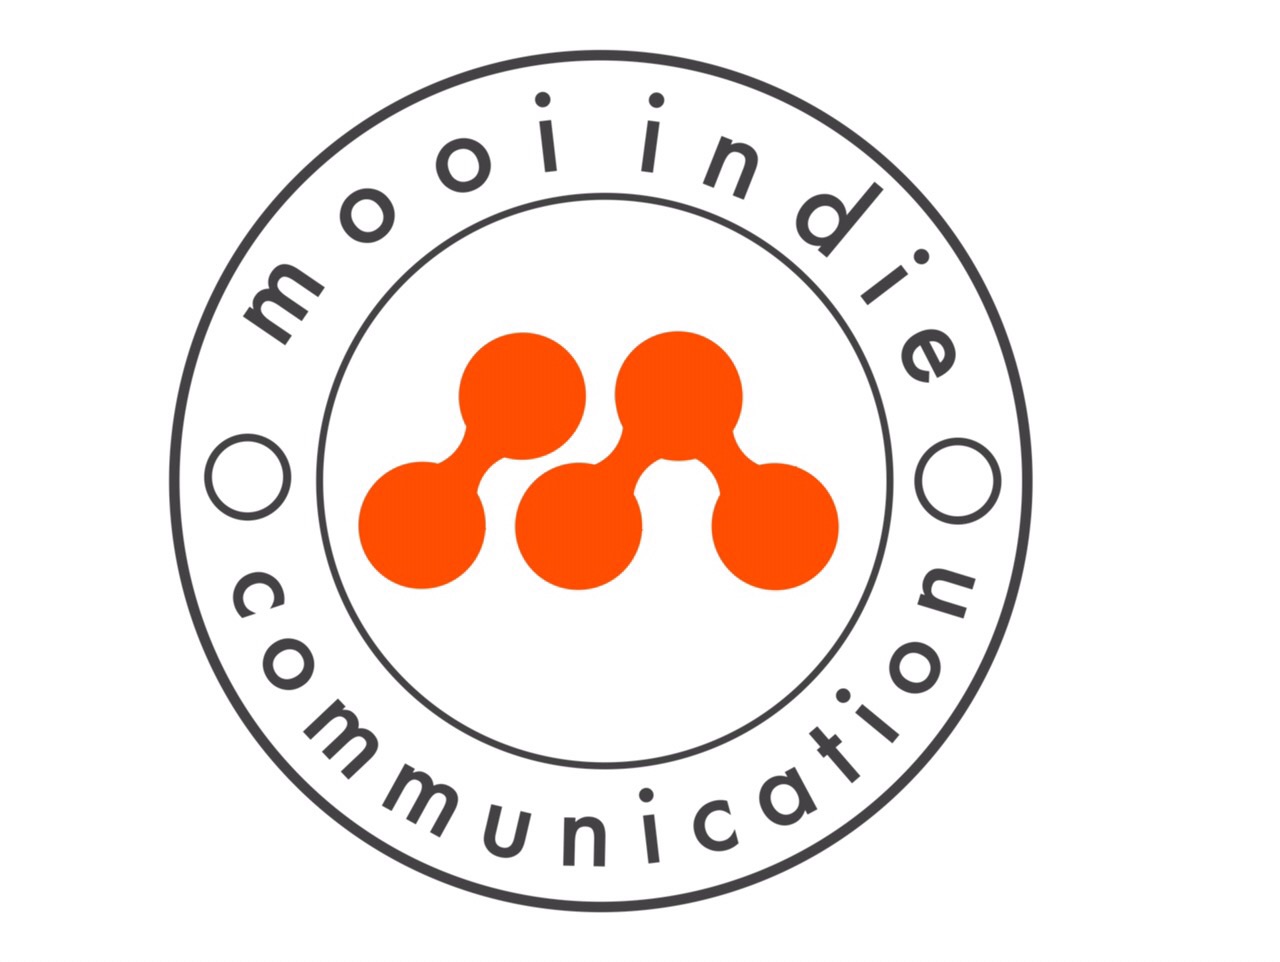 Mooiindie Communication